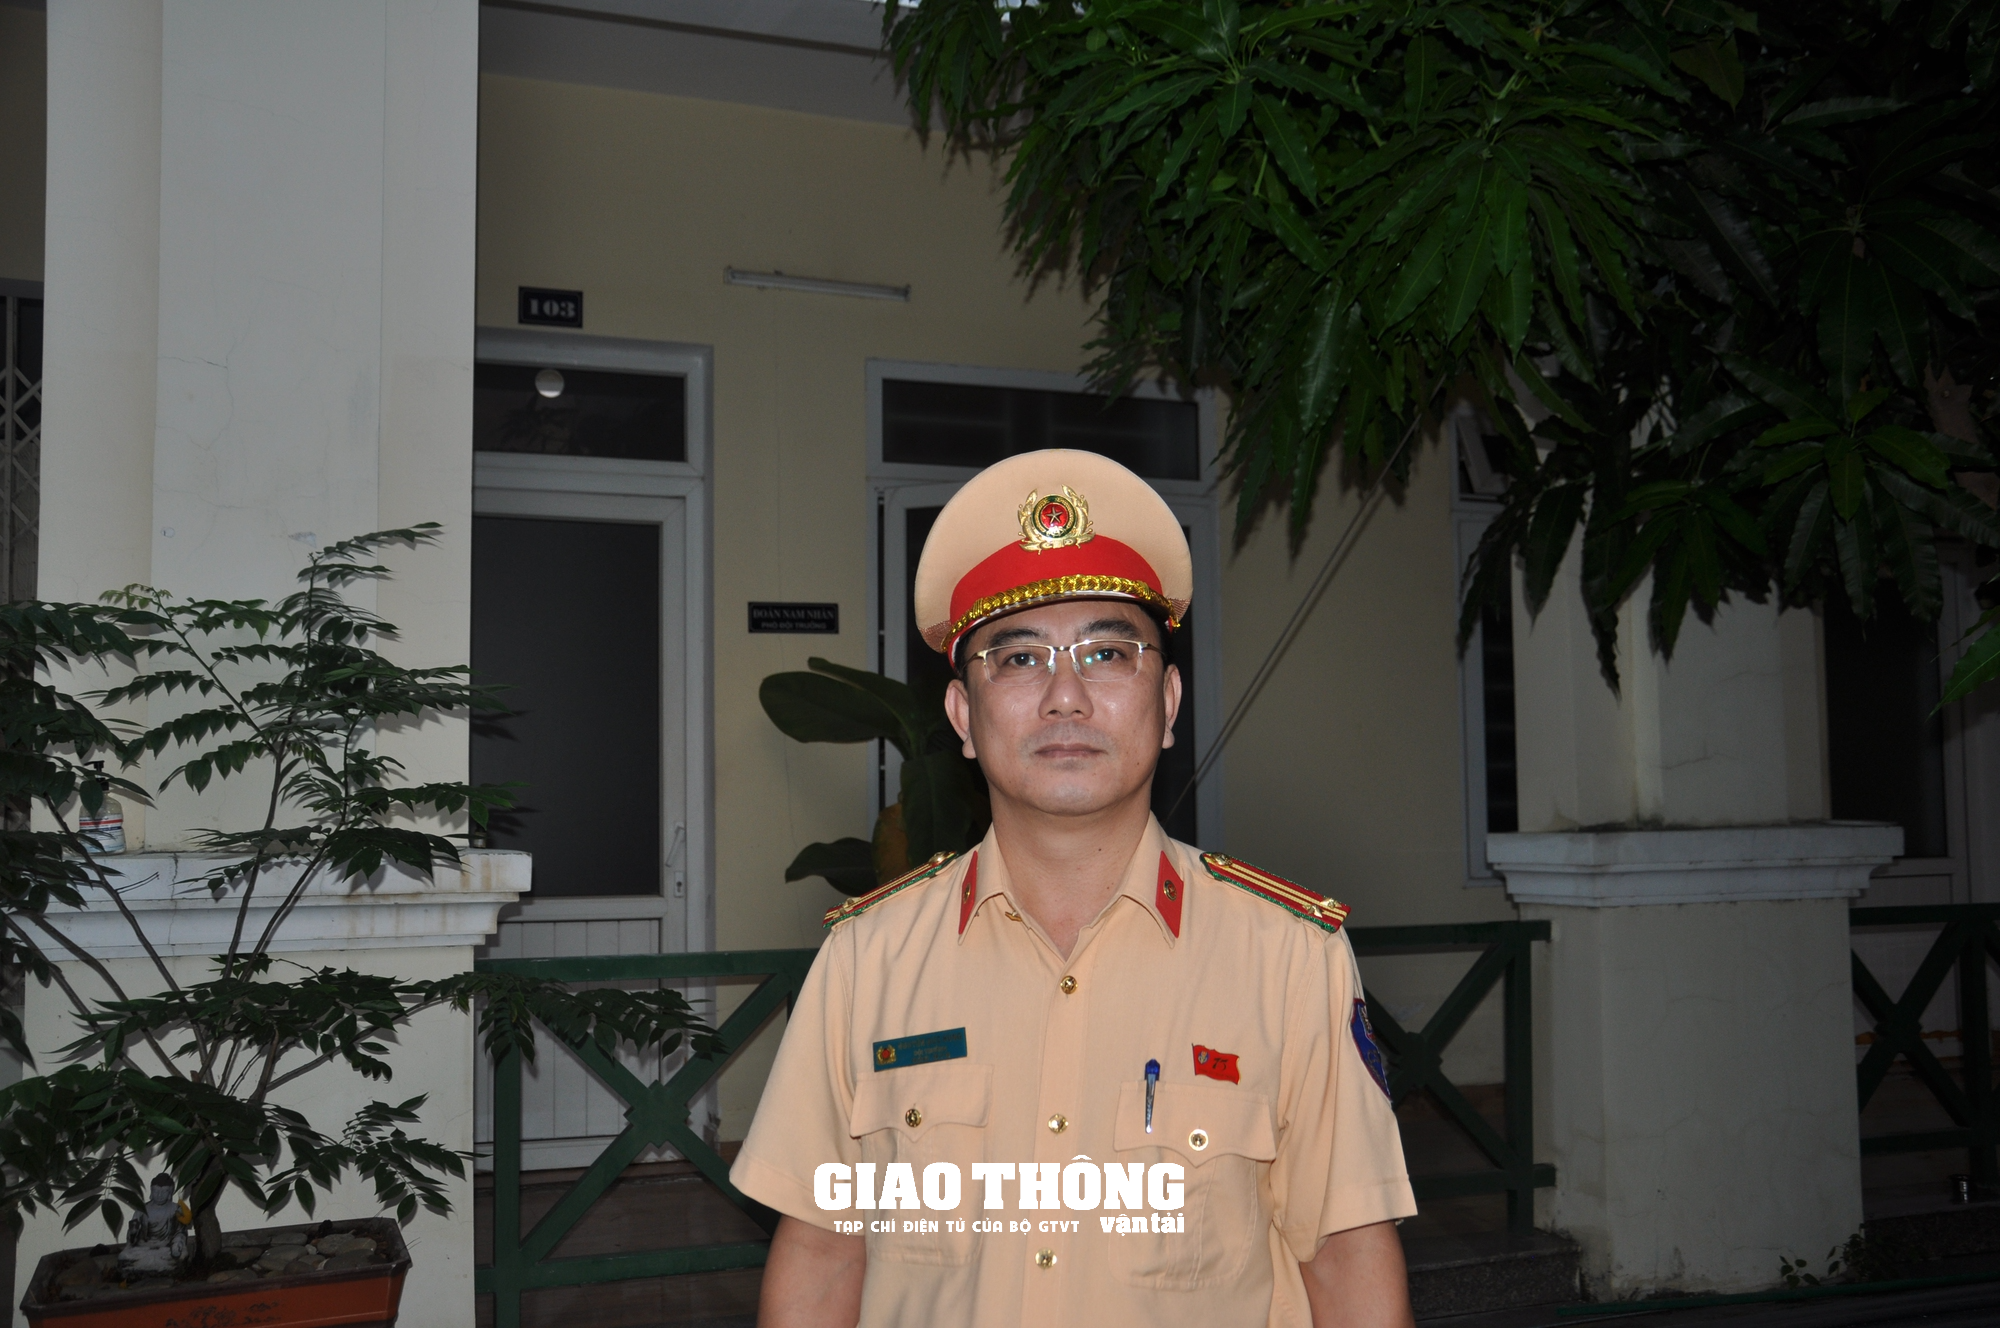 CSGT xuyên ngày đêm kiểm tra nồng độ cồn, ma túy nhân viên đường sắt ở Đà Nẵng - Ảnh 2.